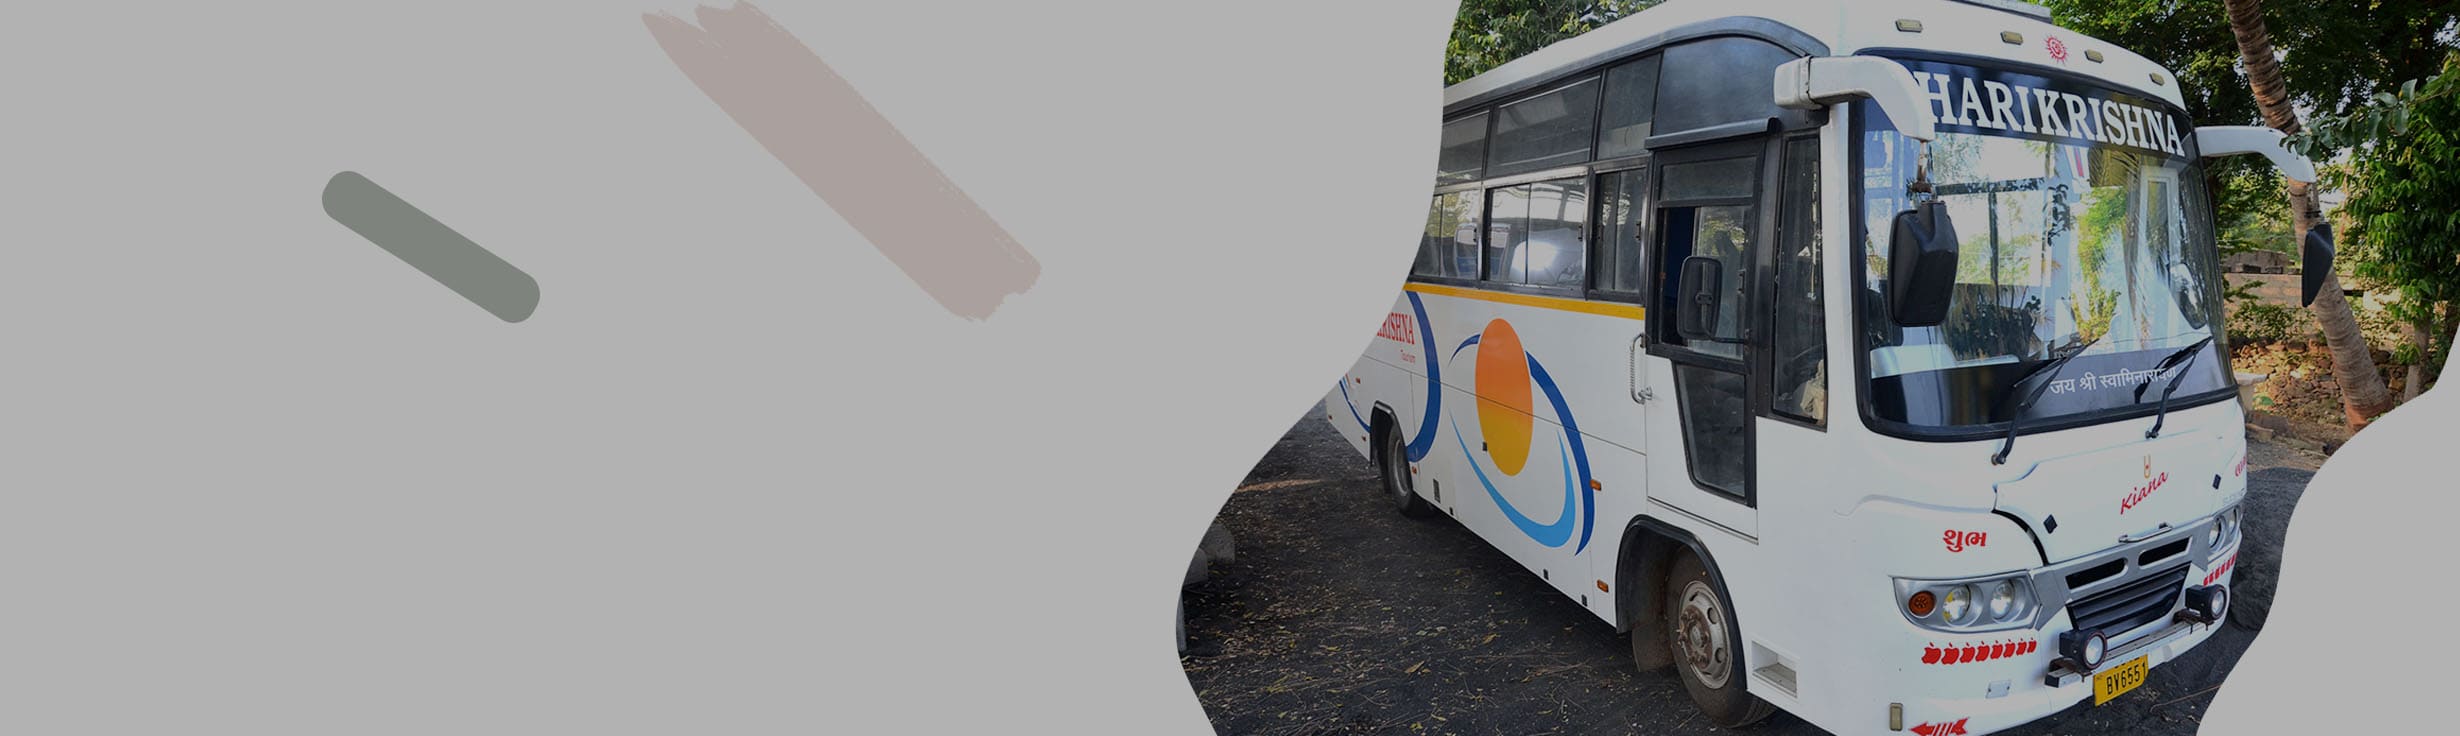 Seating Minibus for India Tour in Gandhidham